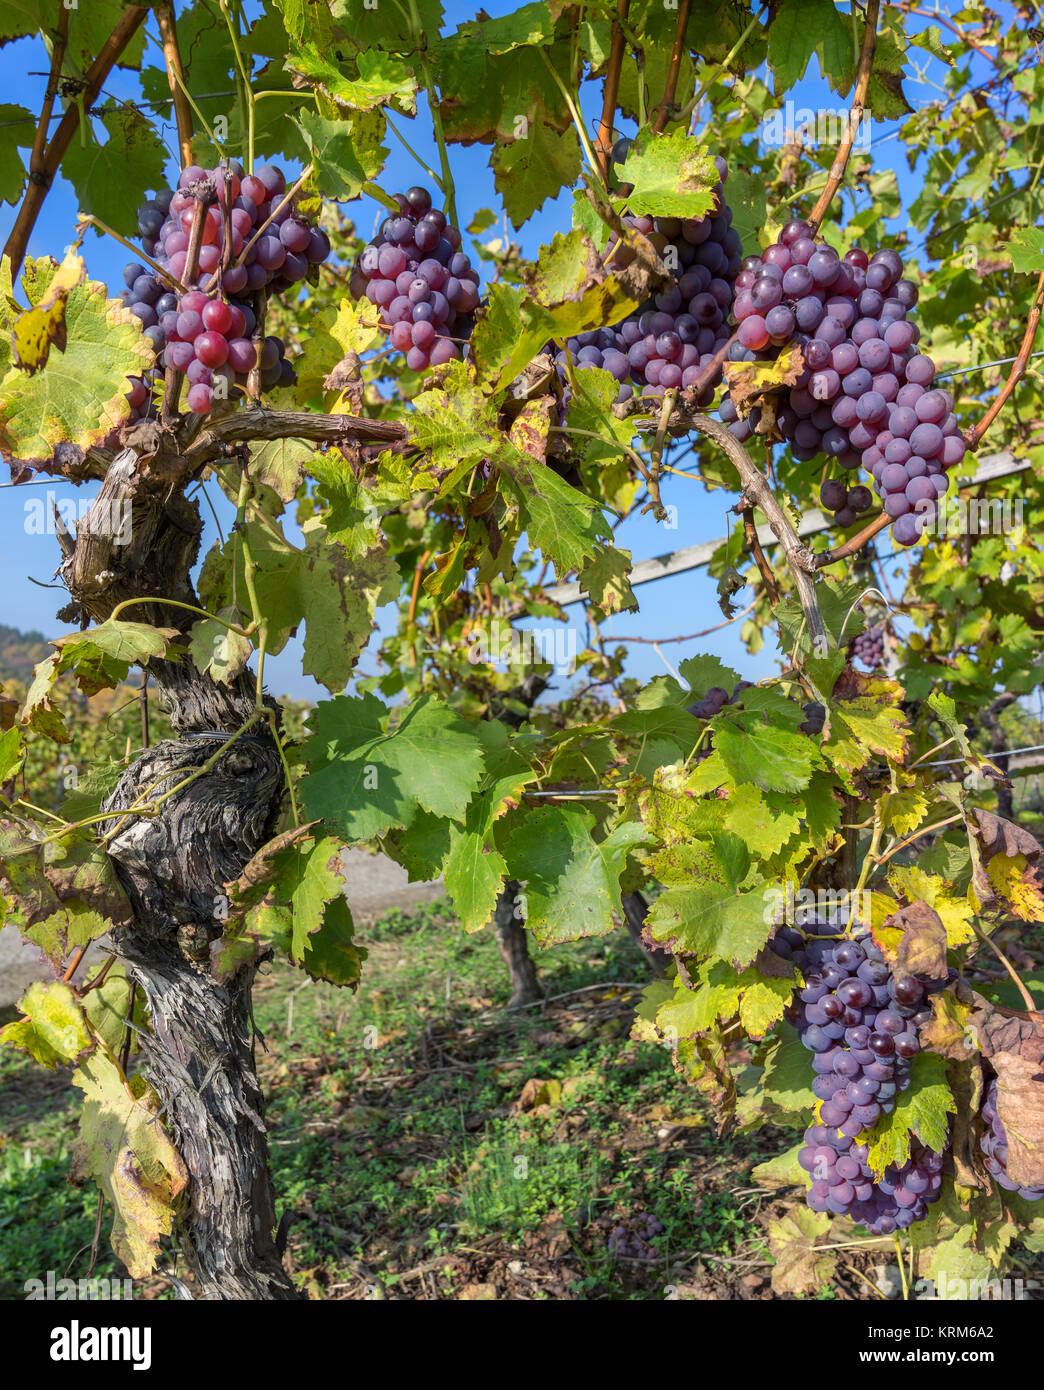 vine in autumn with ripe purple grapes Stock Photo